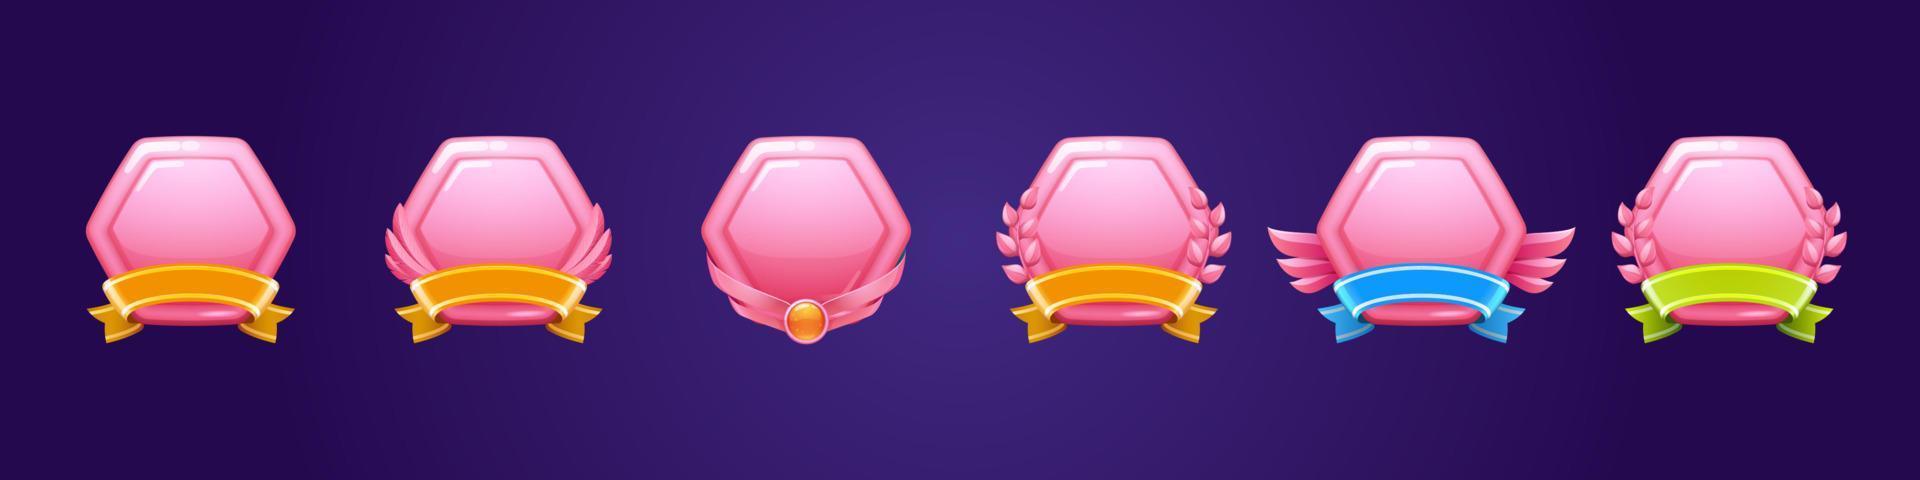 glanzend roze prijs badges voor winnen in spel vector